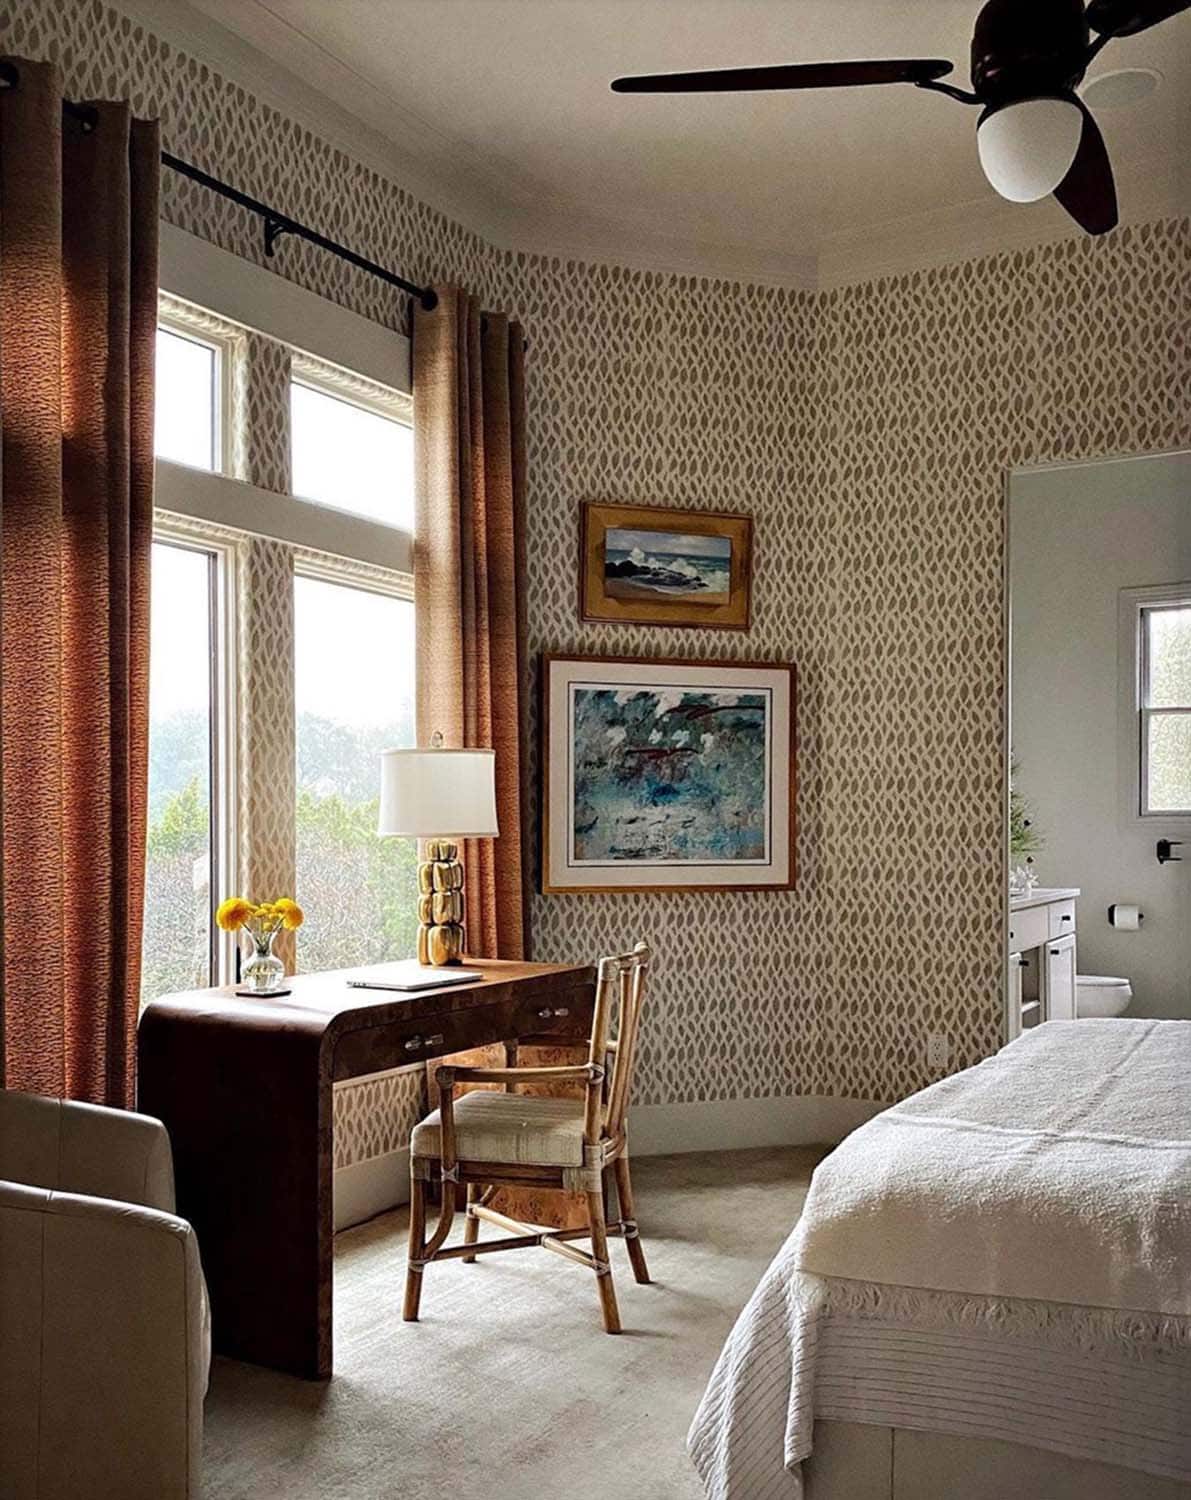 wallpaper-installer-austin-tx-installation-master-bedroom-